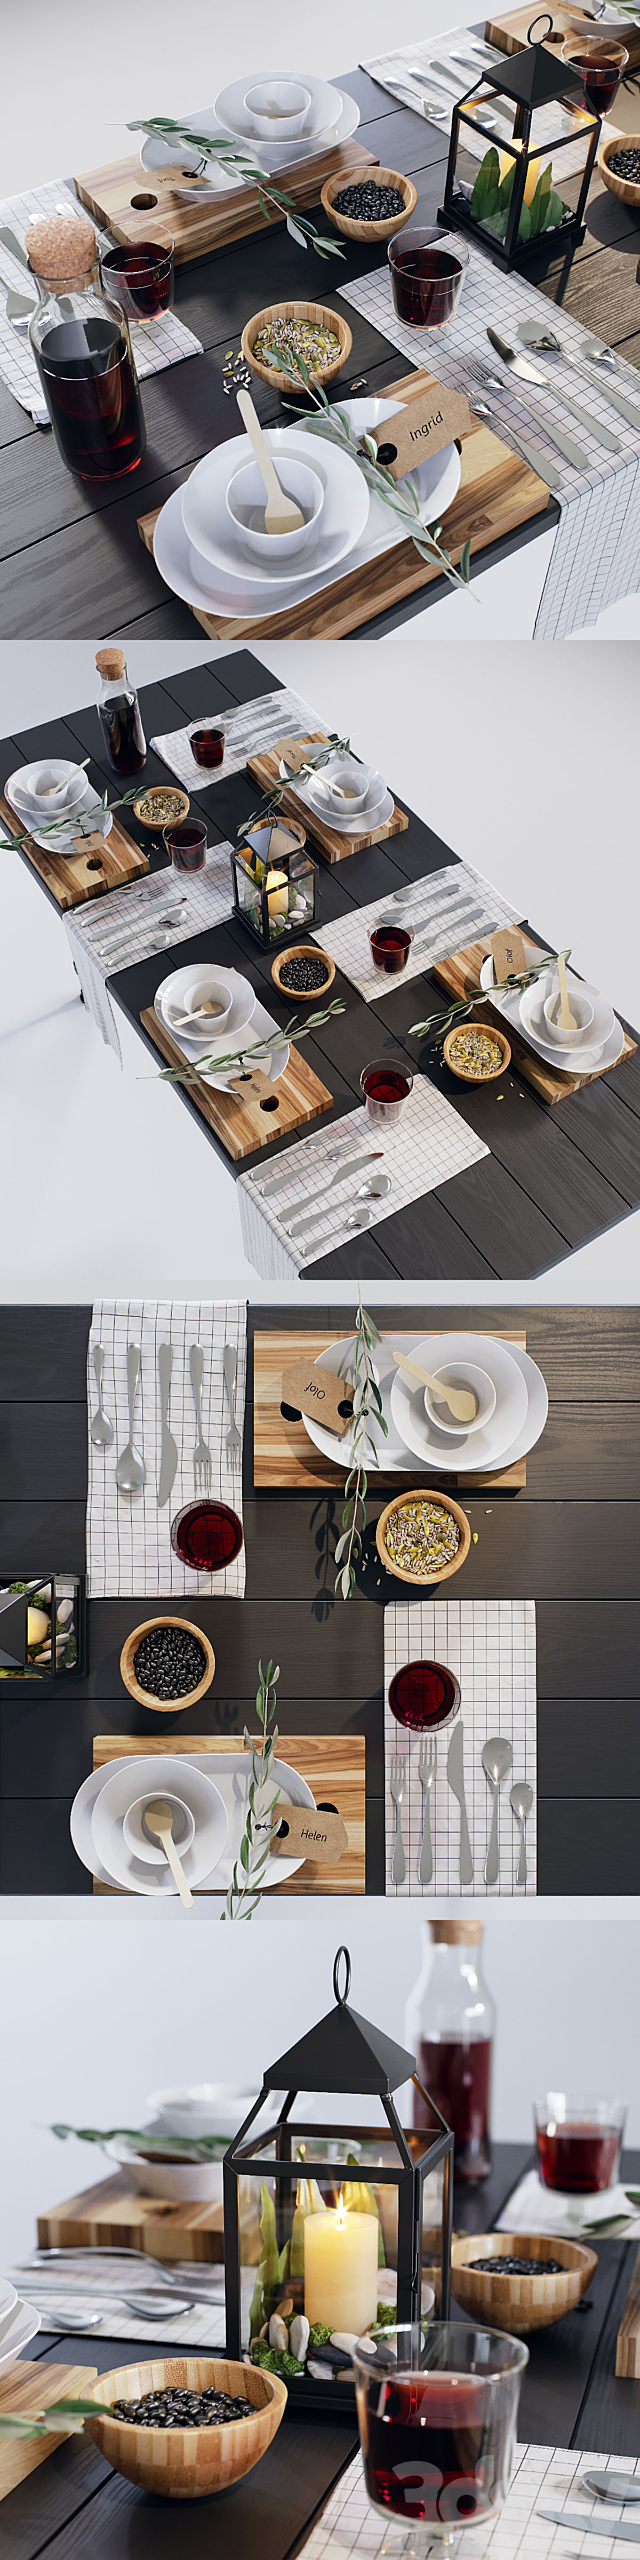 IKEA dining set.1 3DSMax File - thumbnail 2